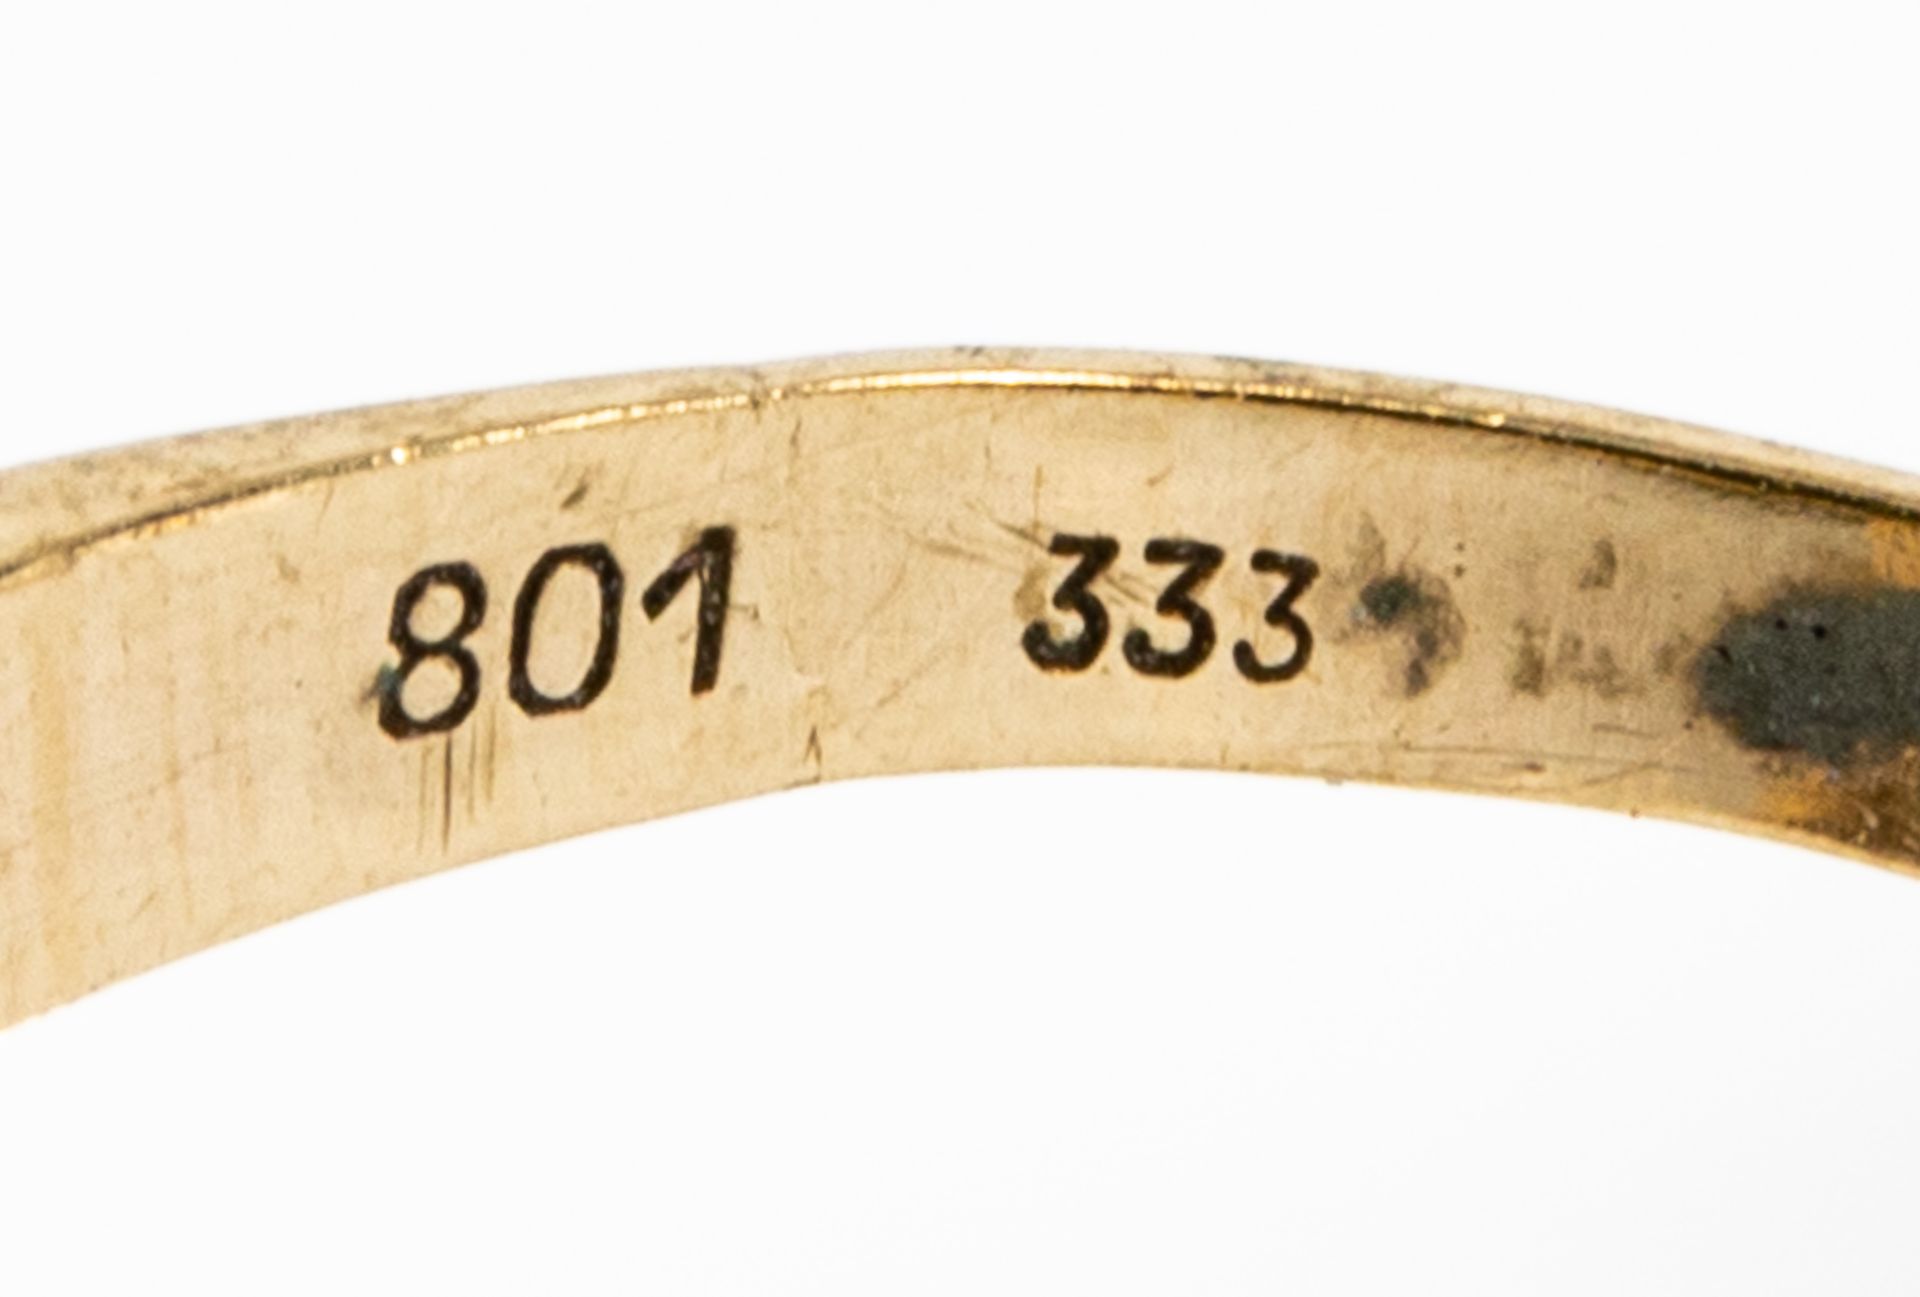 4teiliges Schmuckset, bestehend aus: einem ovalen Kettenanhänger und einem passenden Damenring, bei - Image 4 of 4